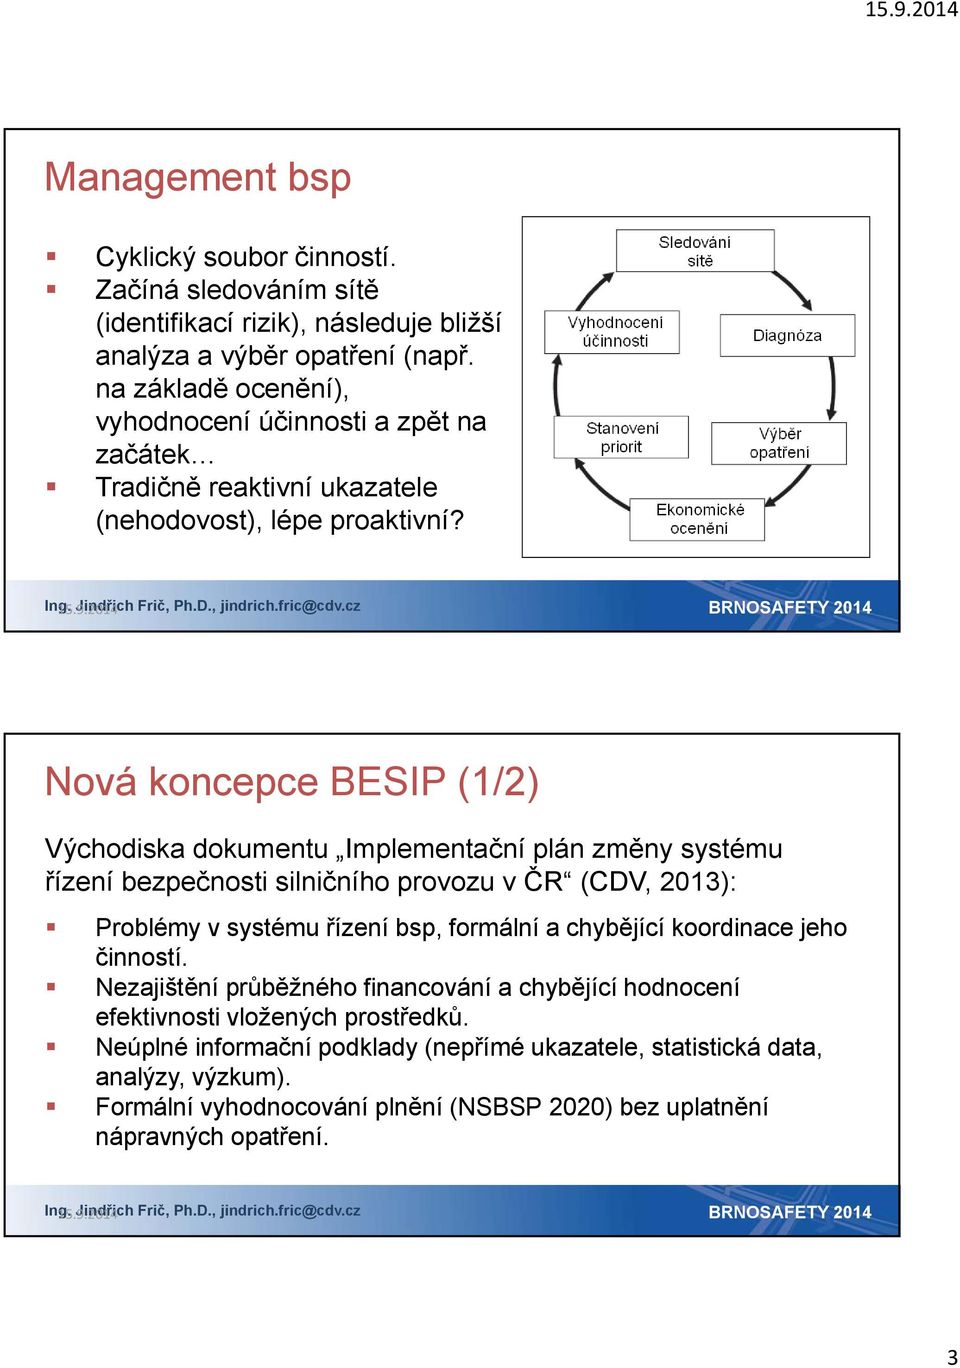 Nová koncepce BESIP (1/2) Východiska dokumentu Implementační plán změny systému řízení bezpečnosti silničního provozu v ČR (CDV, 2013): Problémy v systému řízení bsp, formální a